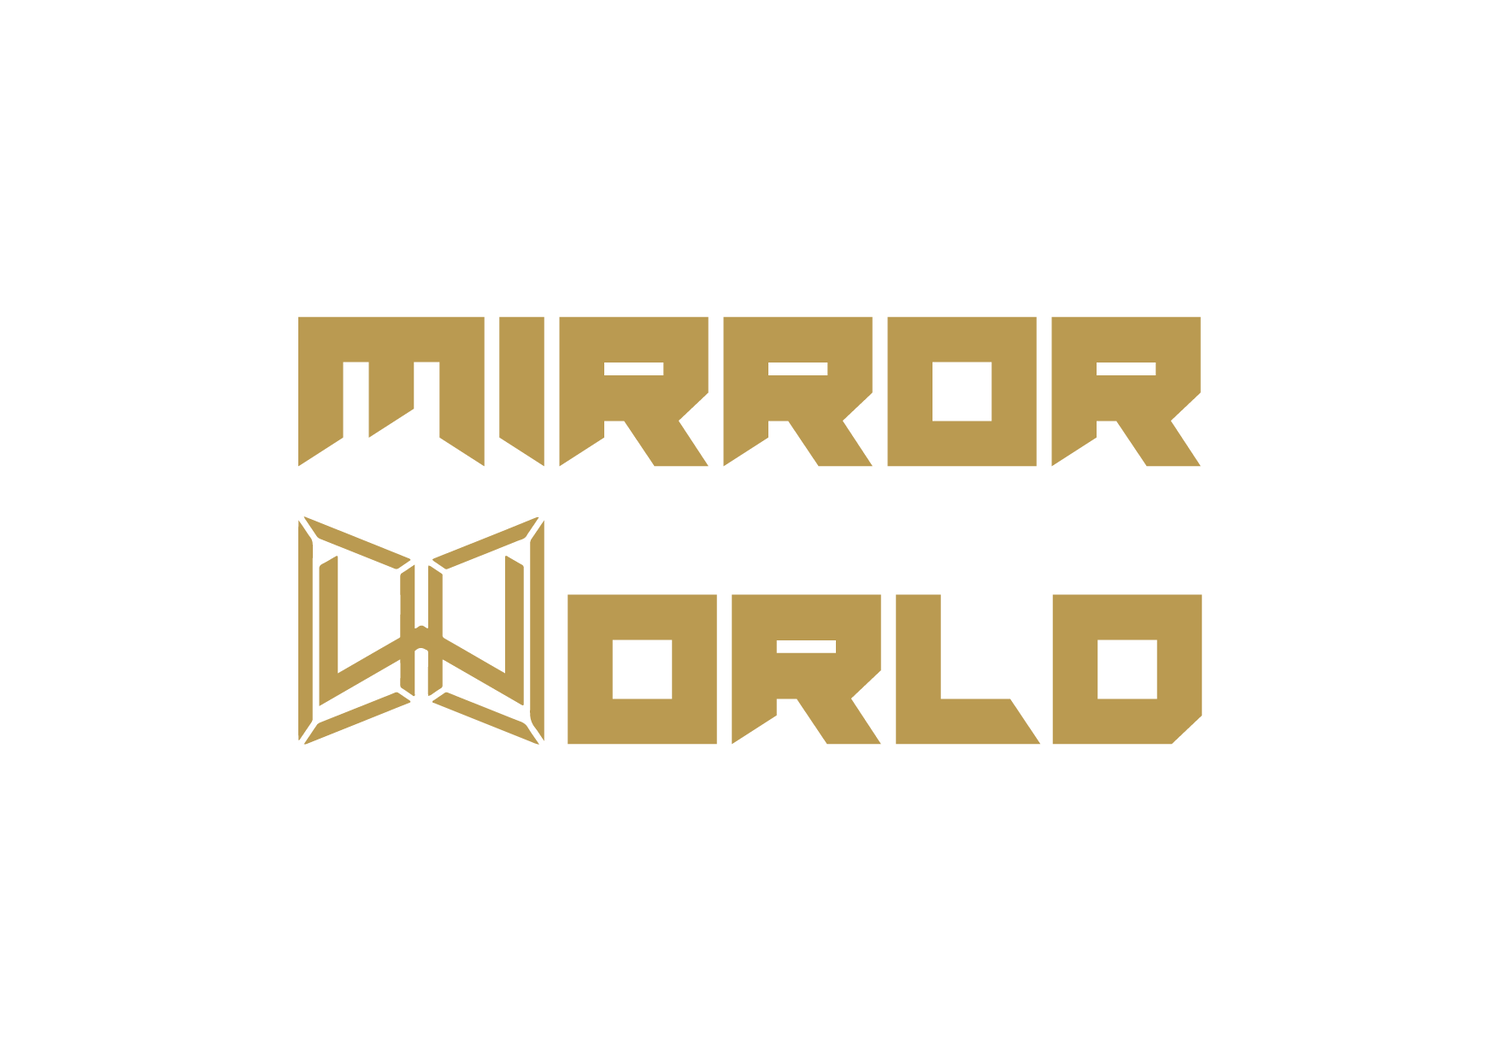 Mirror World